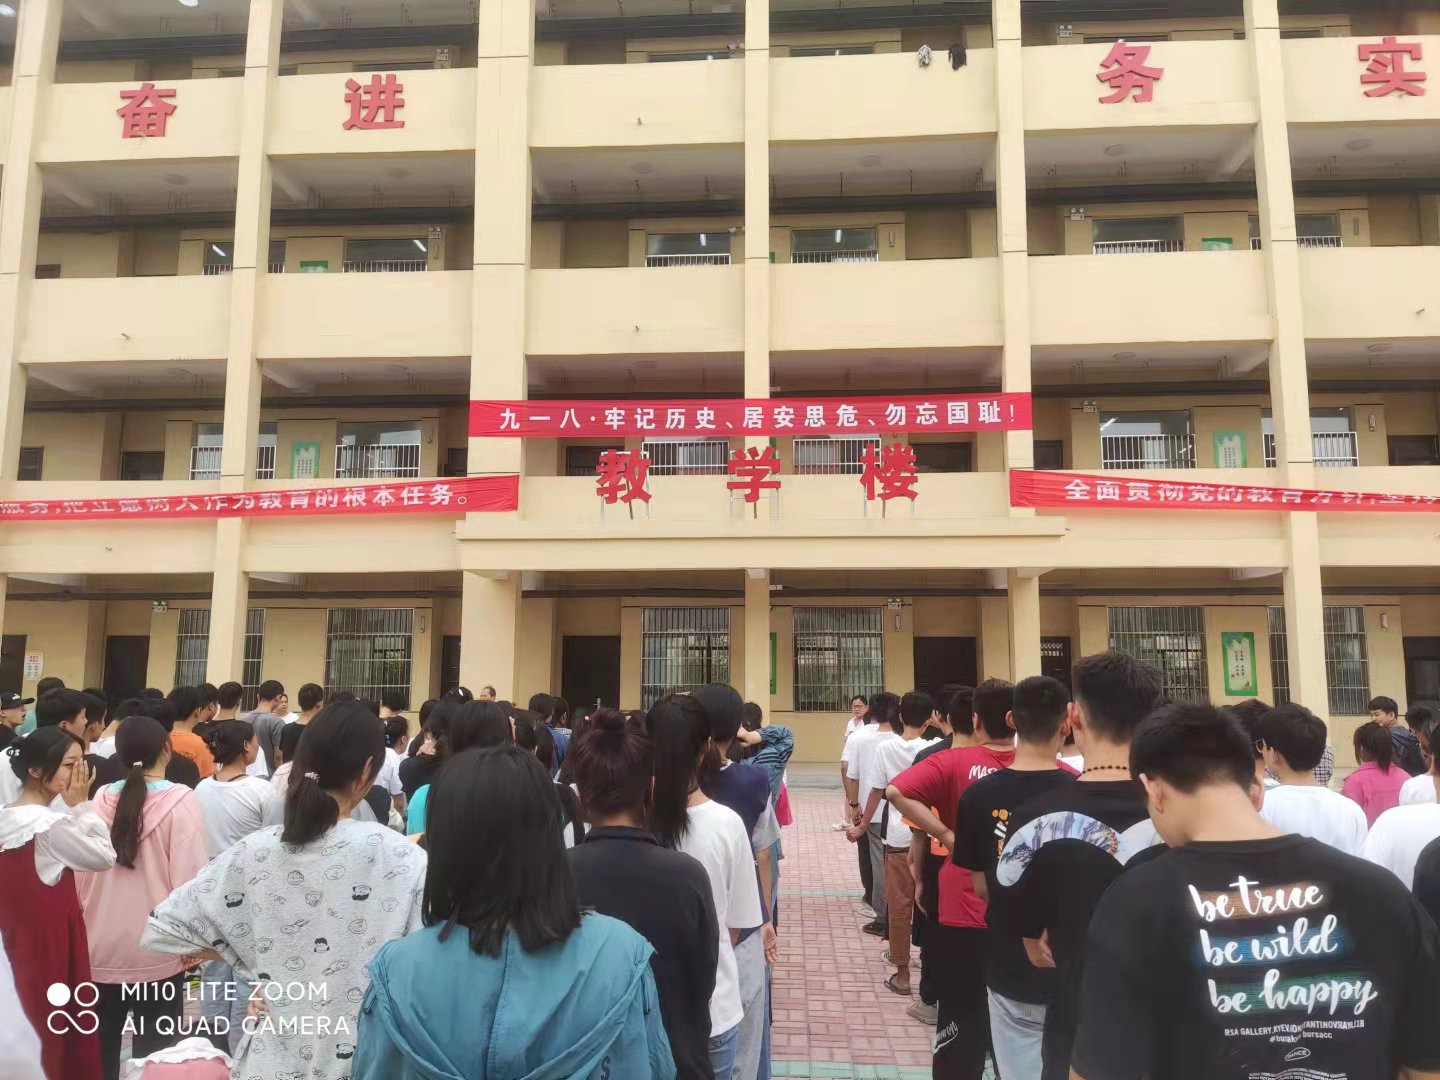 为增强学生的民族责任感,激发学生的爱国热情,萧县黄口中学于当天上午